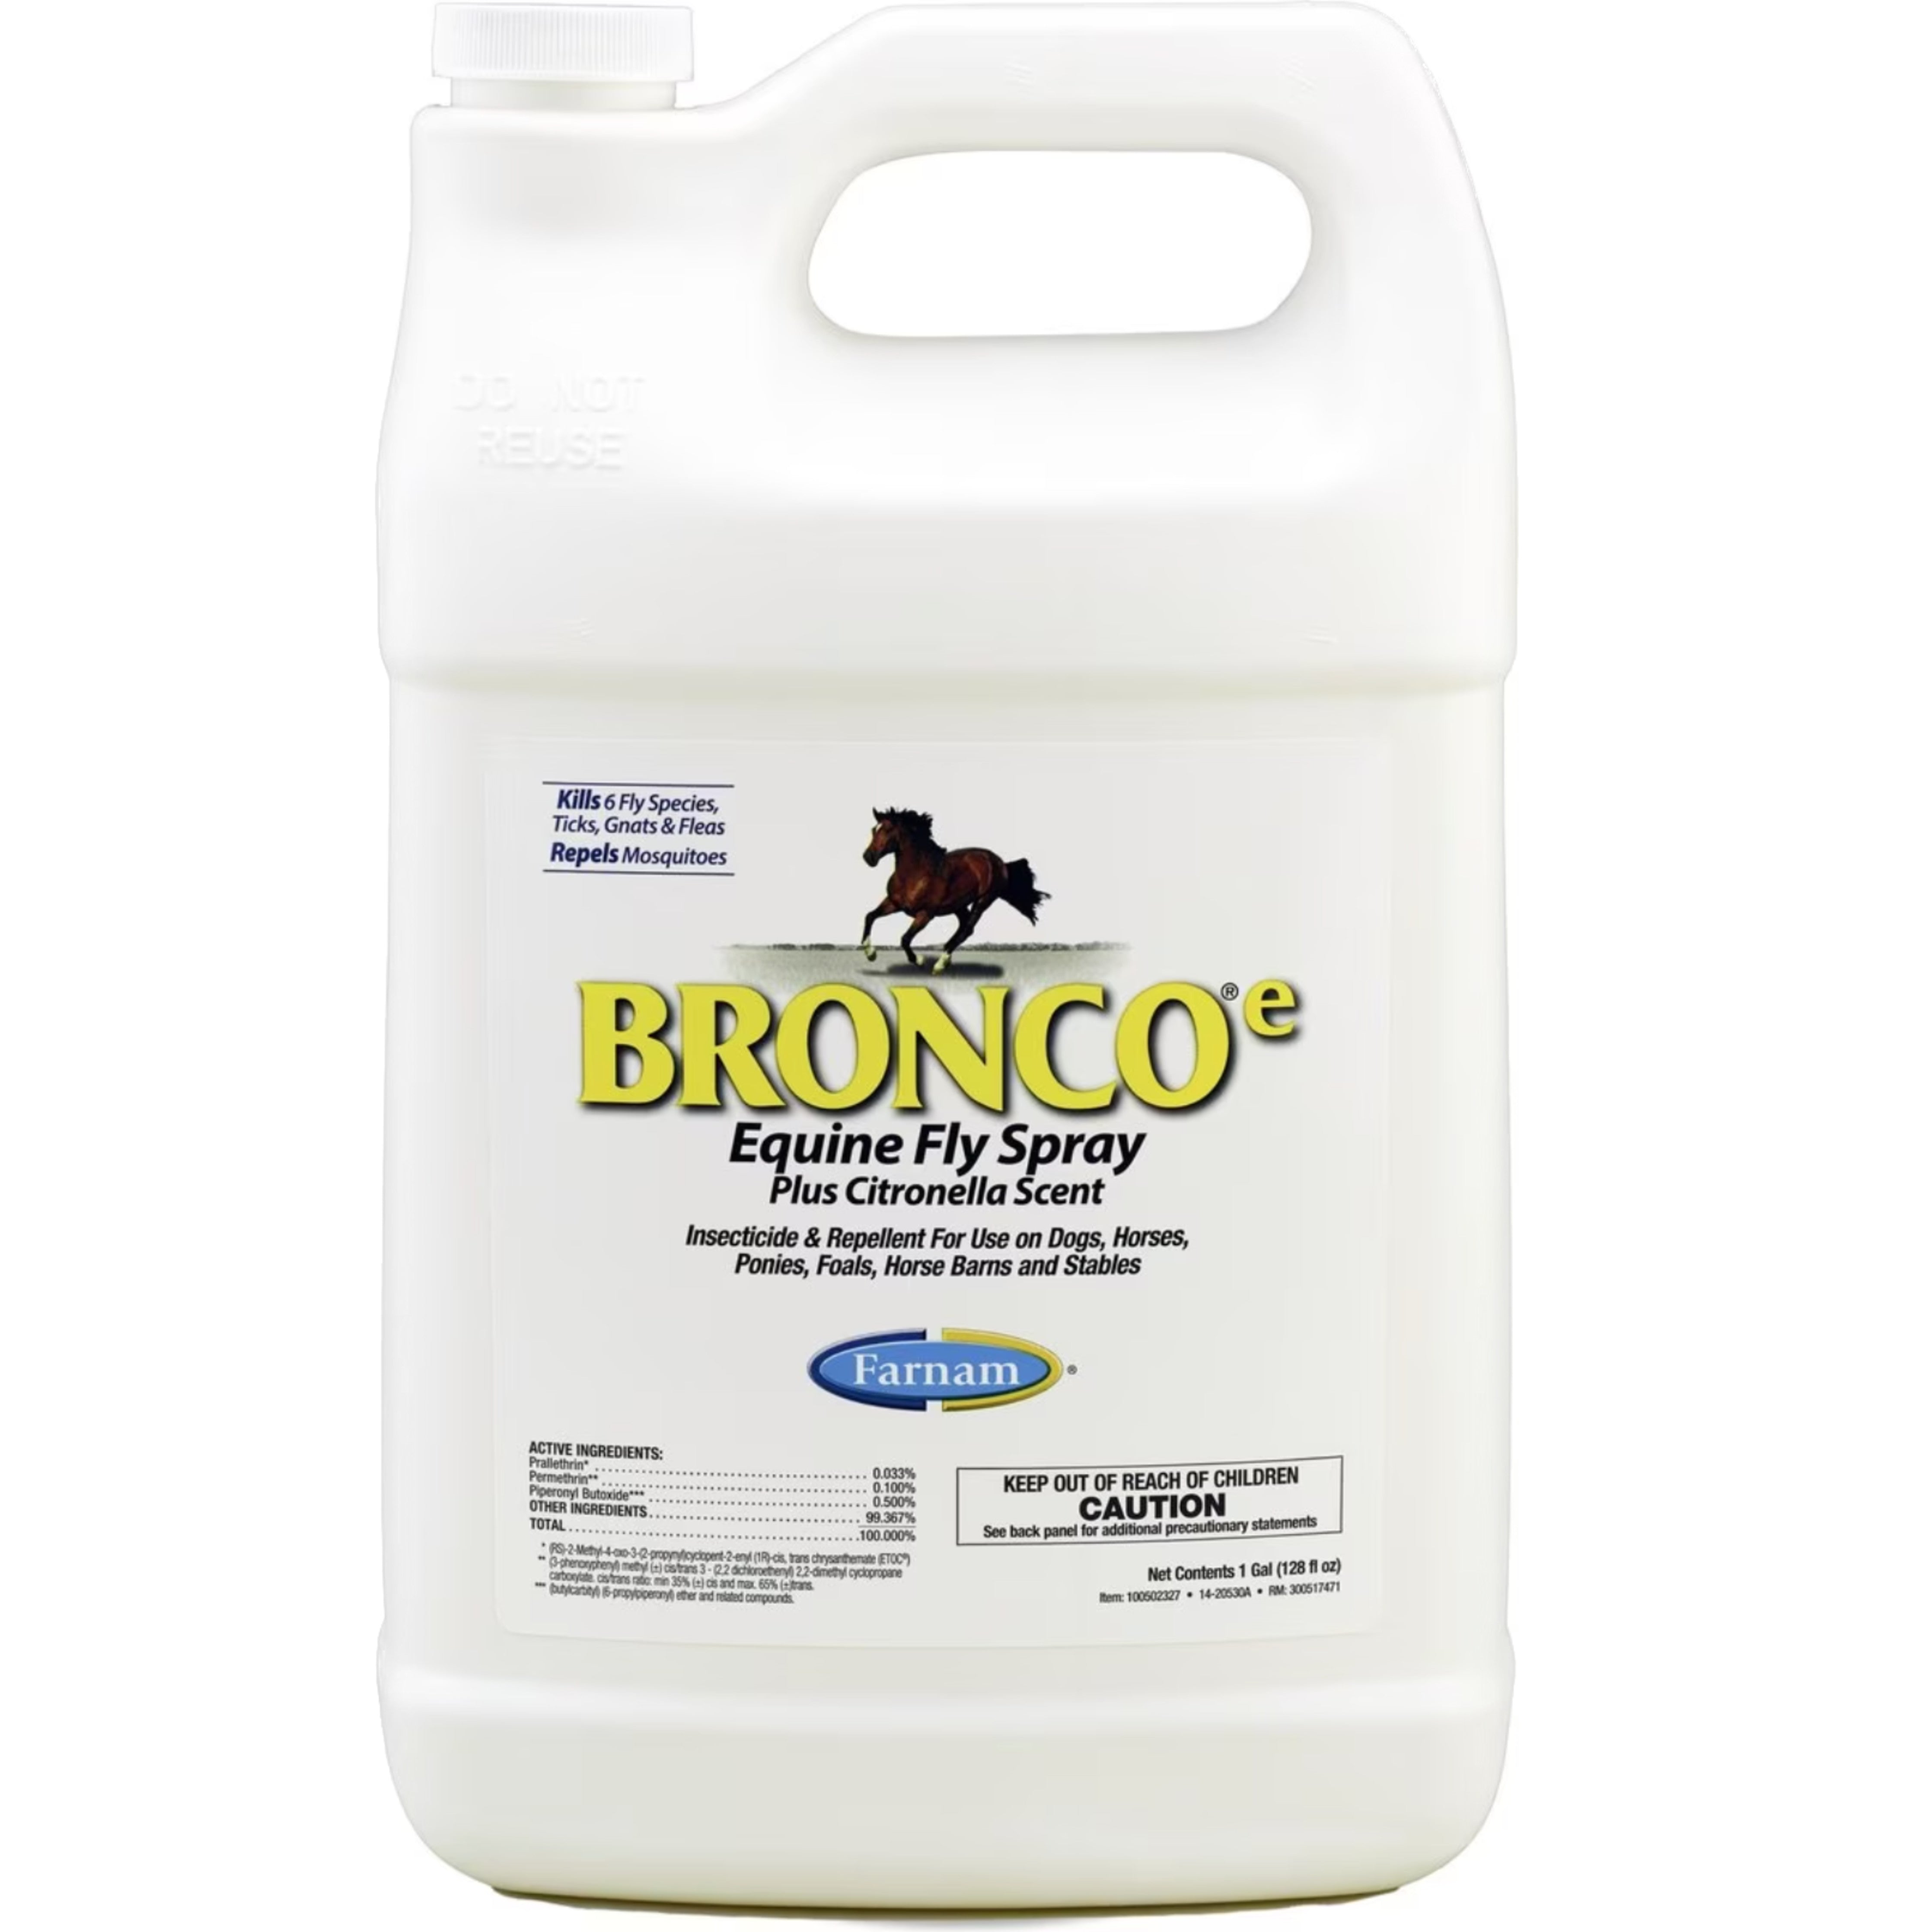 Bronco-e Fly Spray gallon